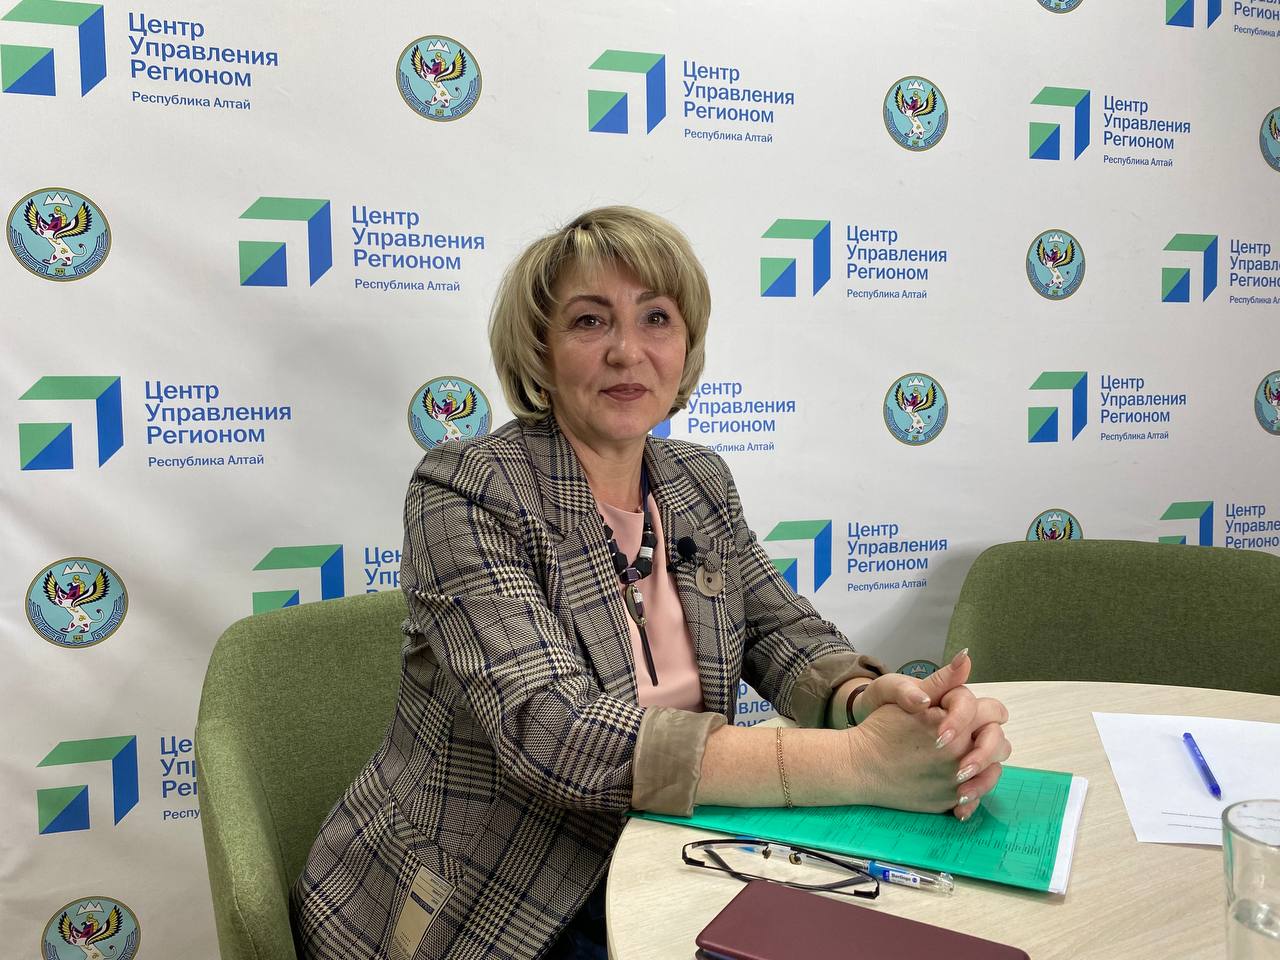 Прямой эфир о тарифах прошел в ЦУР Республики Алтай